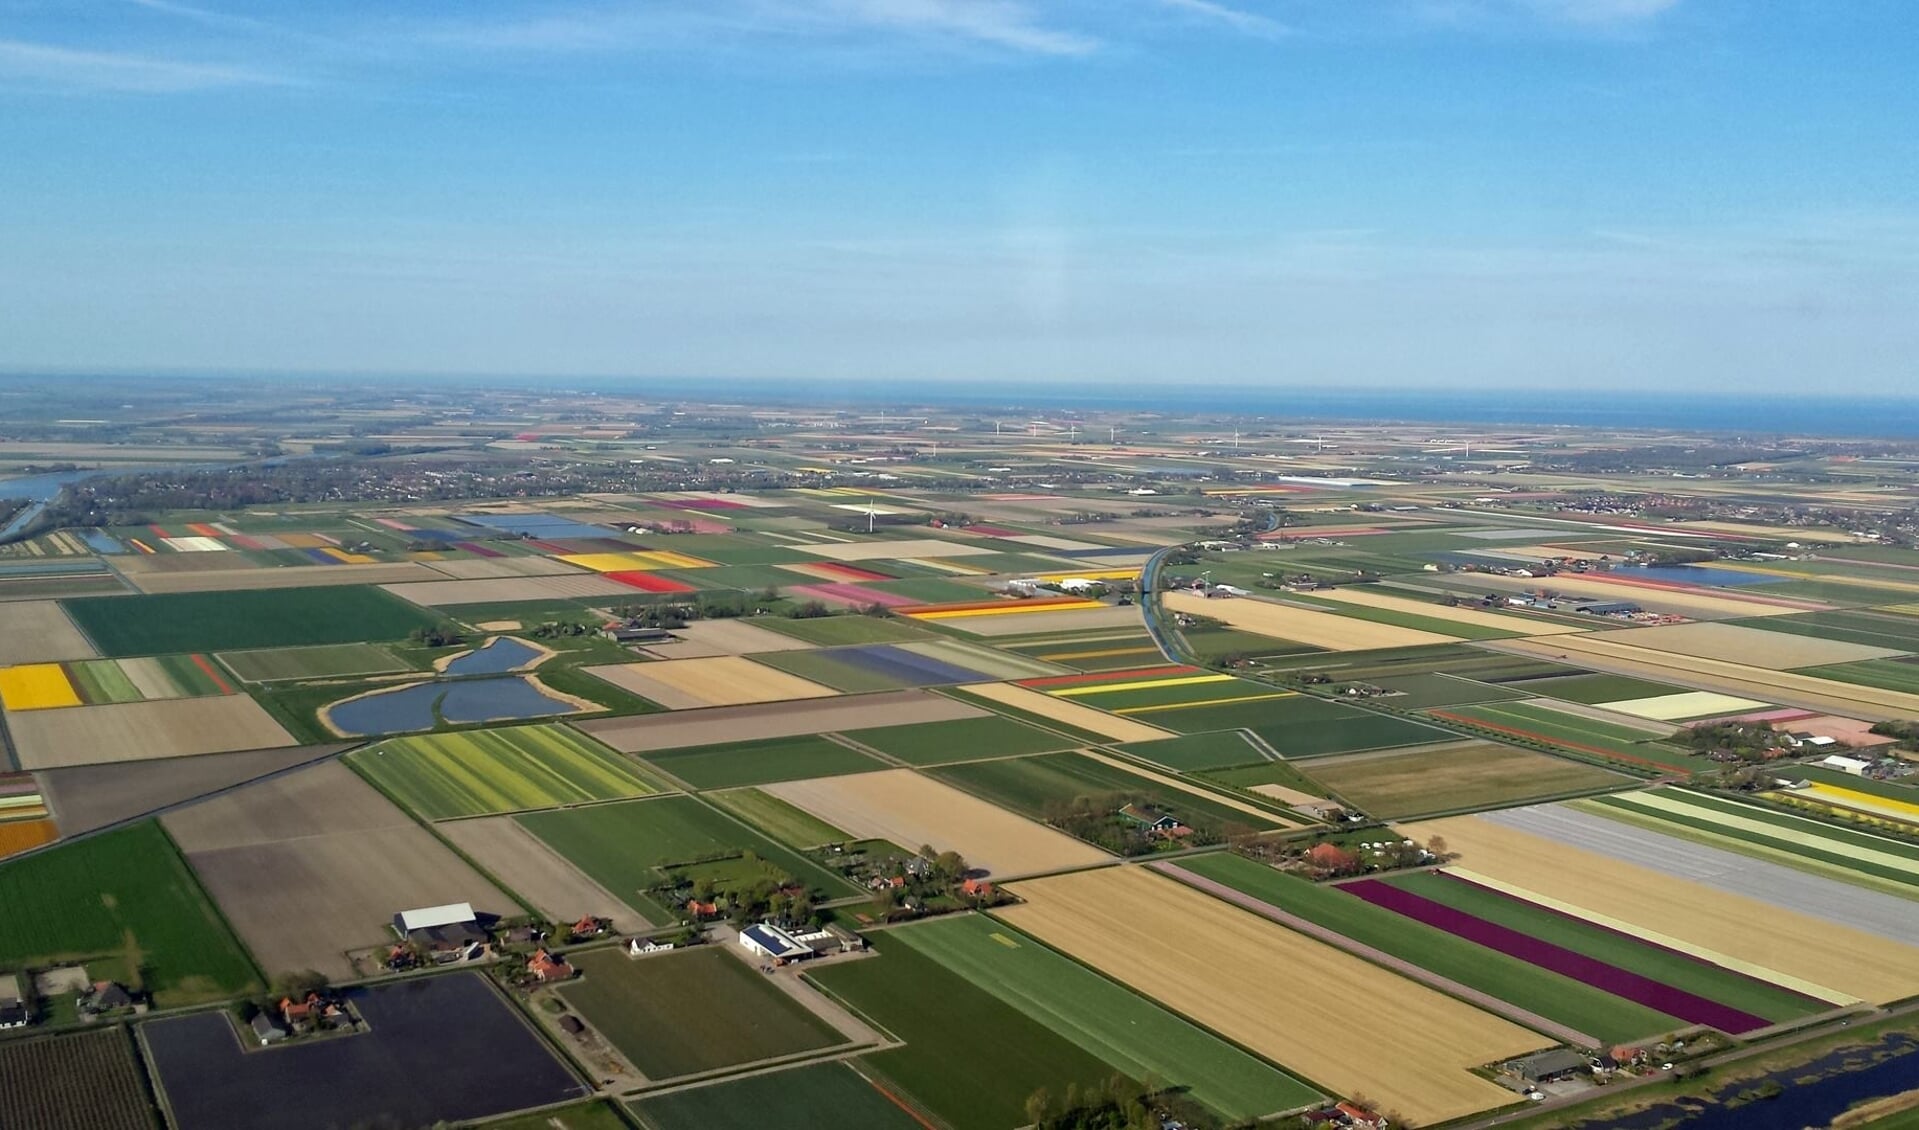 Noord-Holland van bovenaf gezien. Als je je aanmeldt voor de nieuwsbrief maak je kans op een rondvlucht.